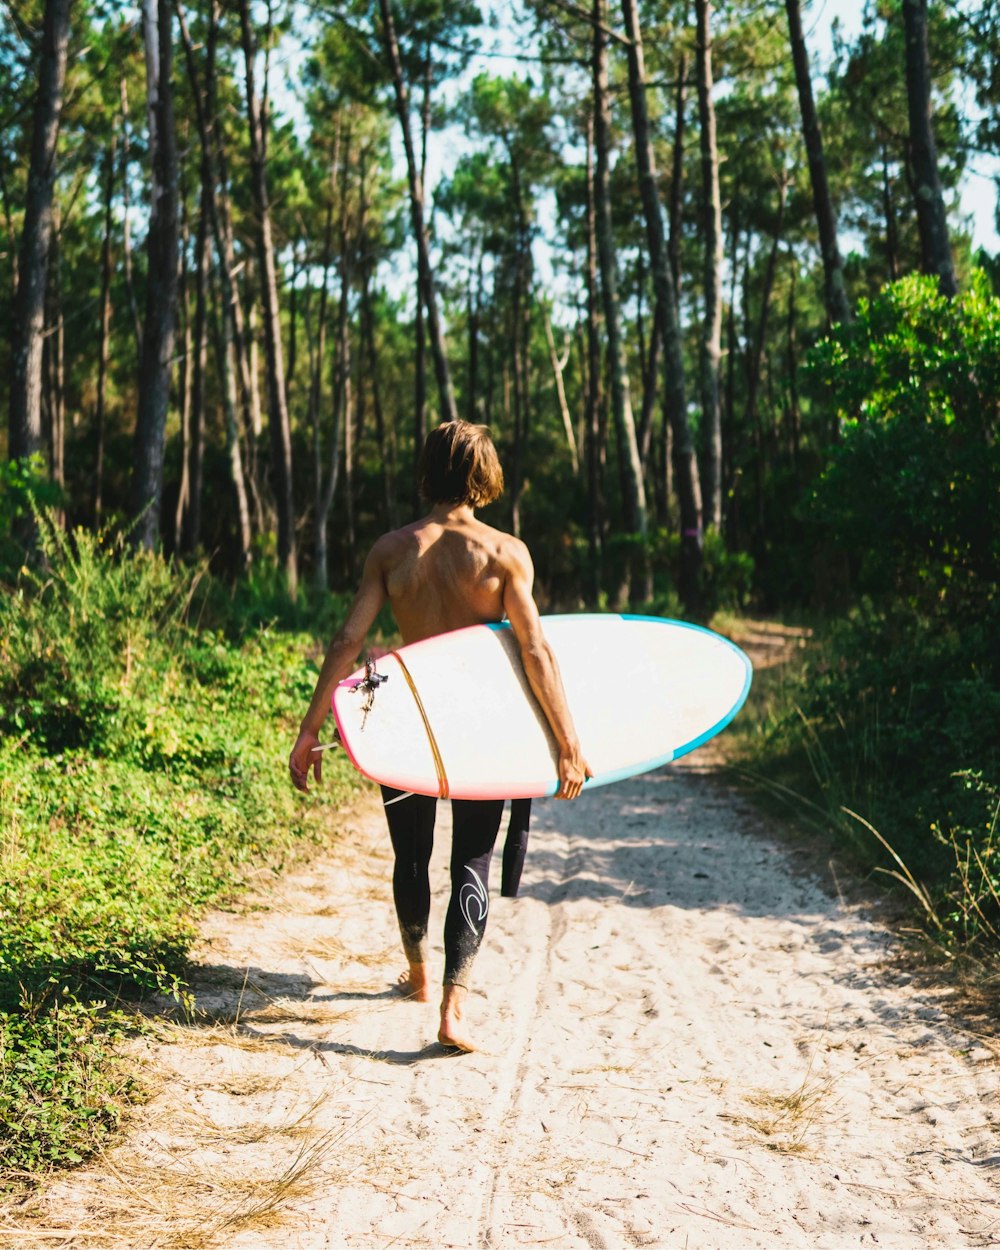 Mujer en bikini blanco y negro sosteniendo tabla de surf blanca caminando en camino de tierra durante el día